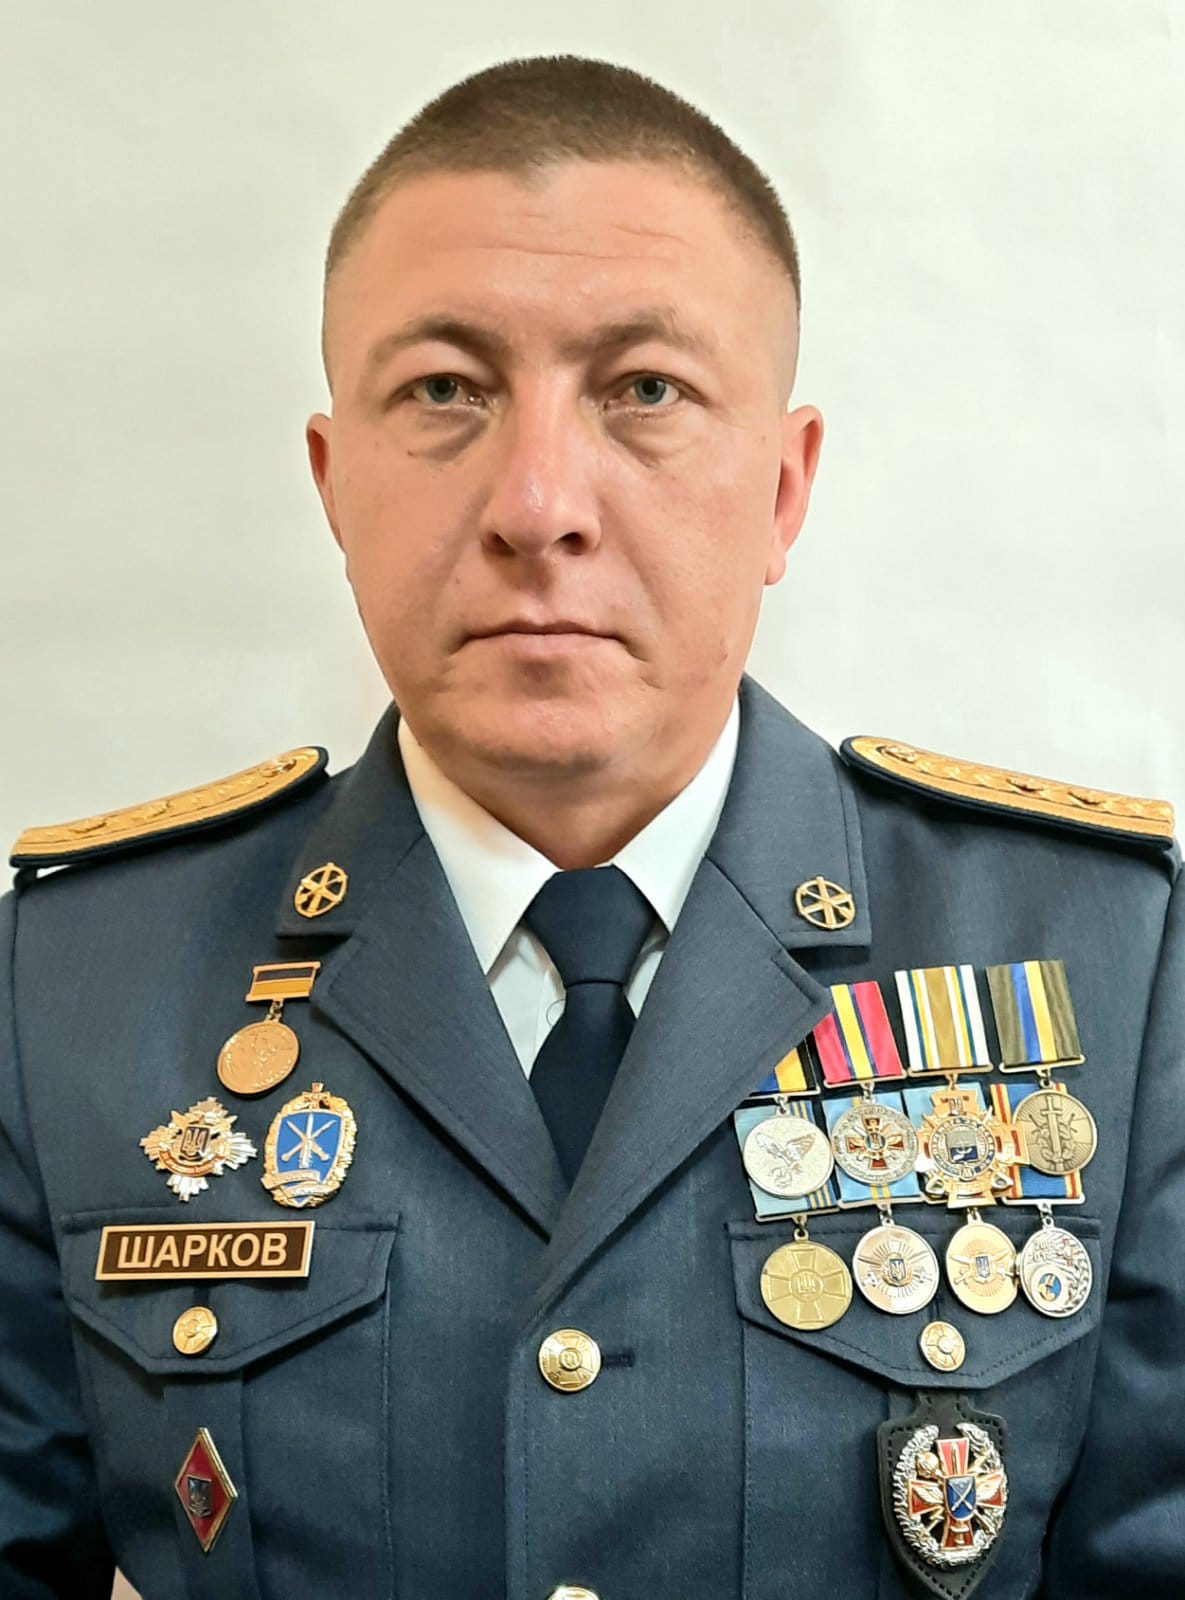 Герой України Артем Шарков  з 2014 року стоїть на захисті нашої країни. Фото надав автор